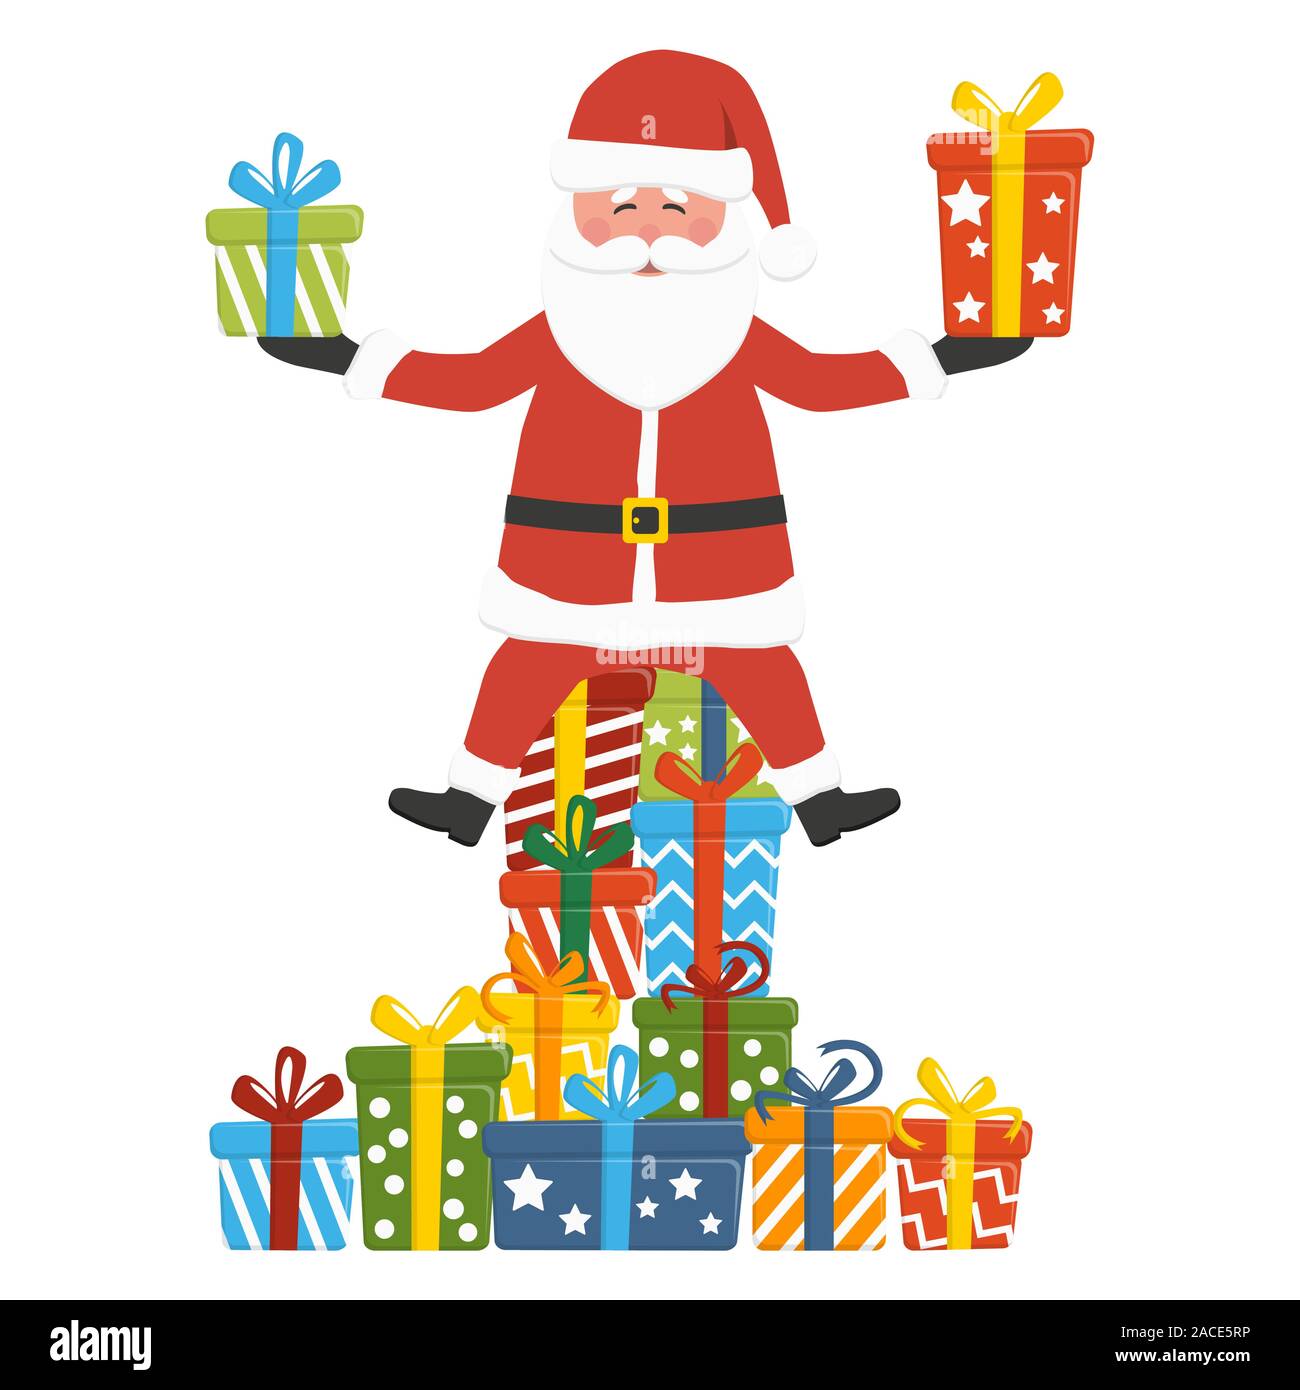 Weihnachten Konzept mit Santa Claus sitzt auf und halten einige farbige Geschenke, auf weißem Hintergrund zu Weihnachten Grüße isoliert Stock Vektor